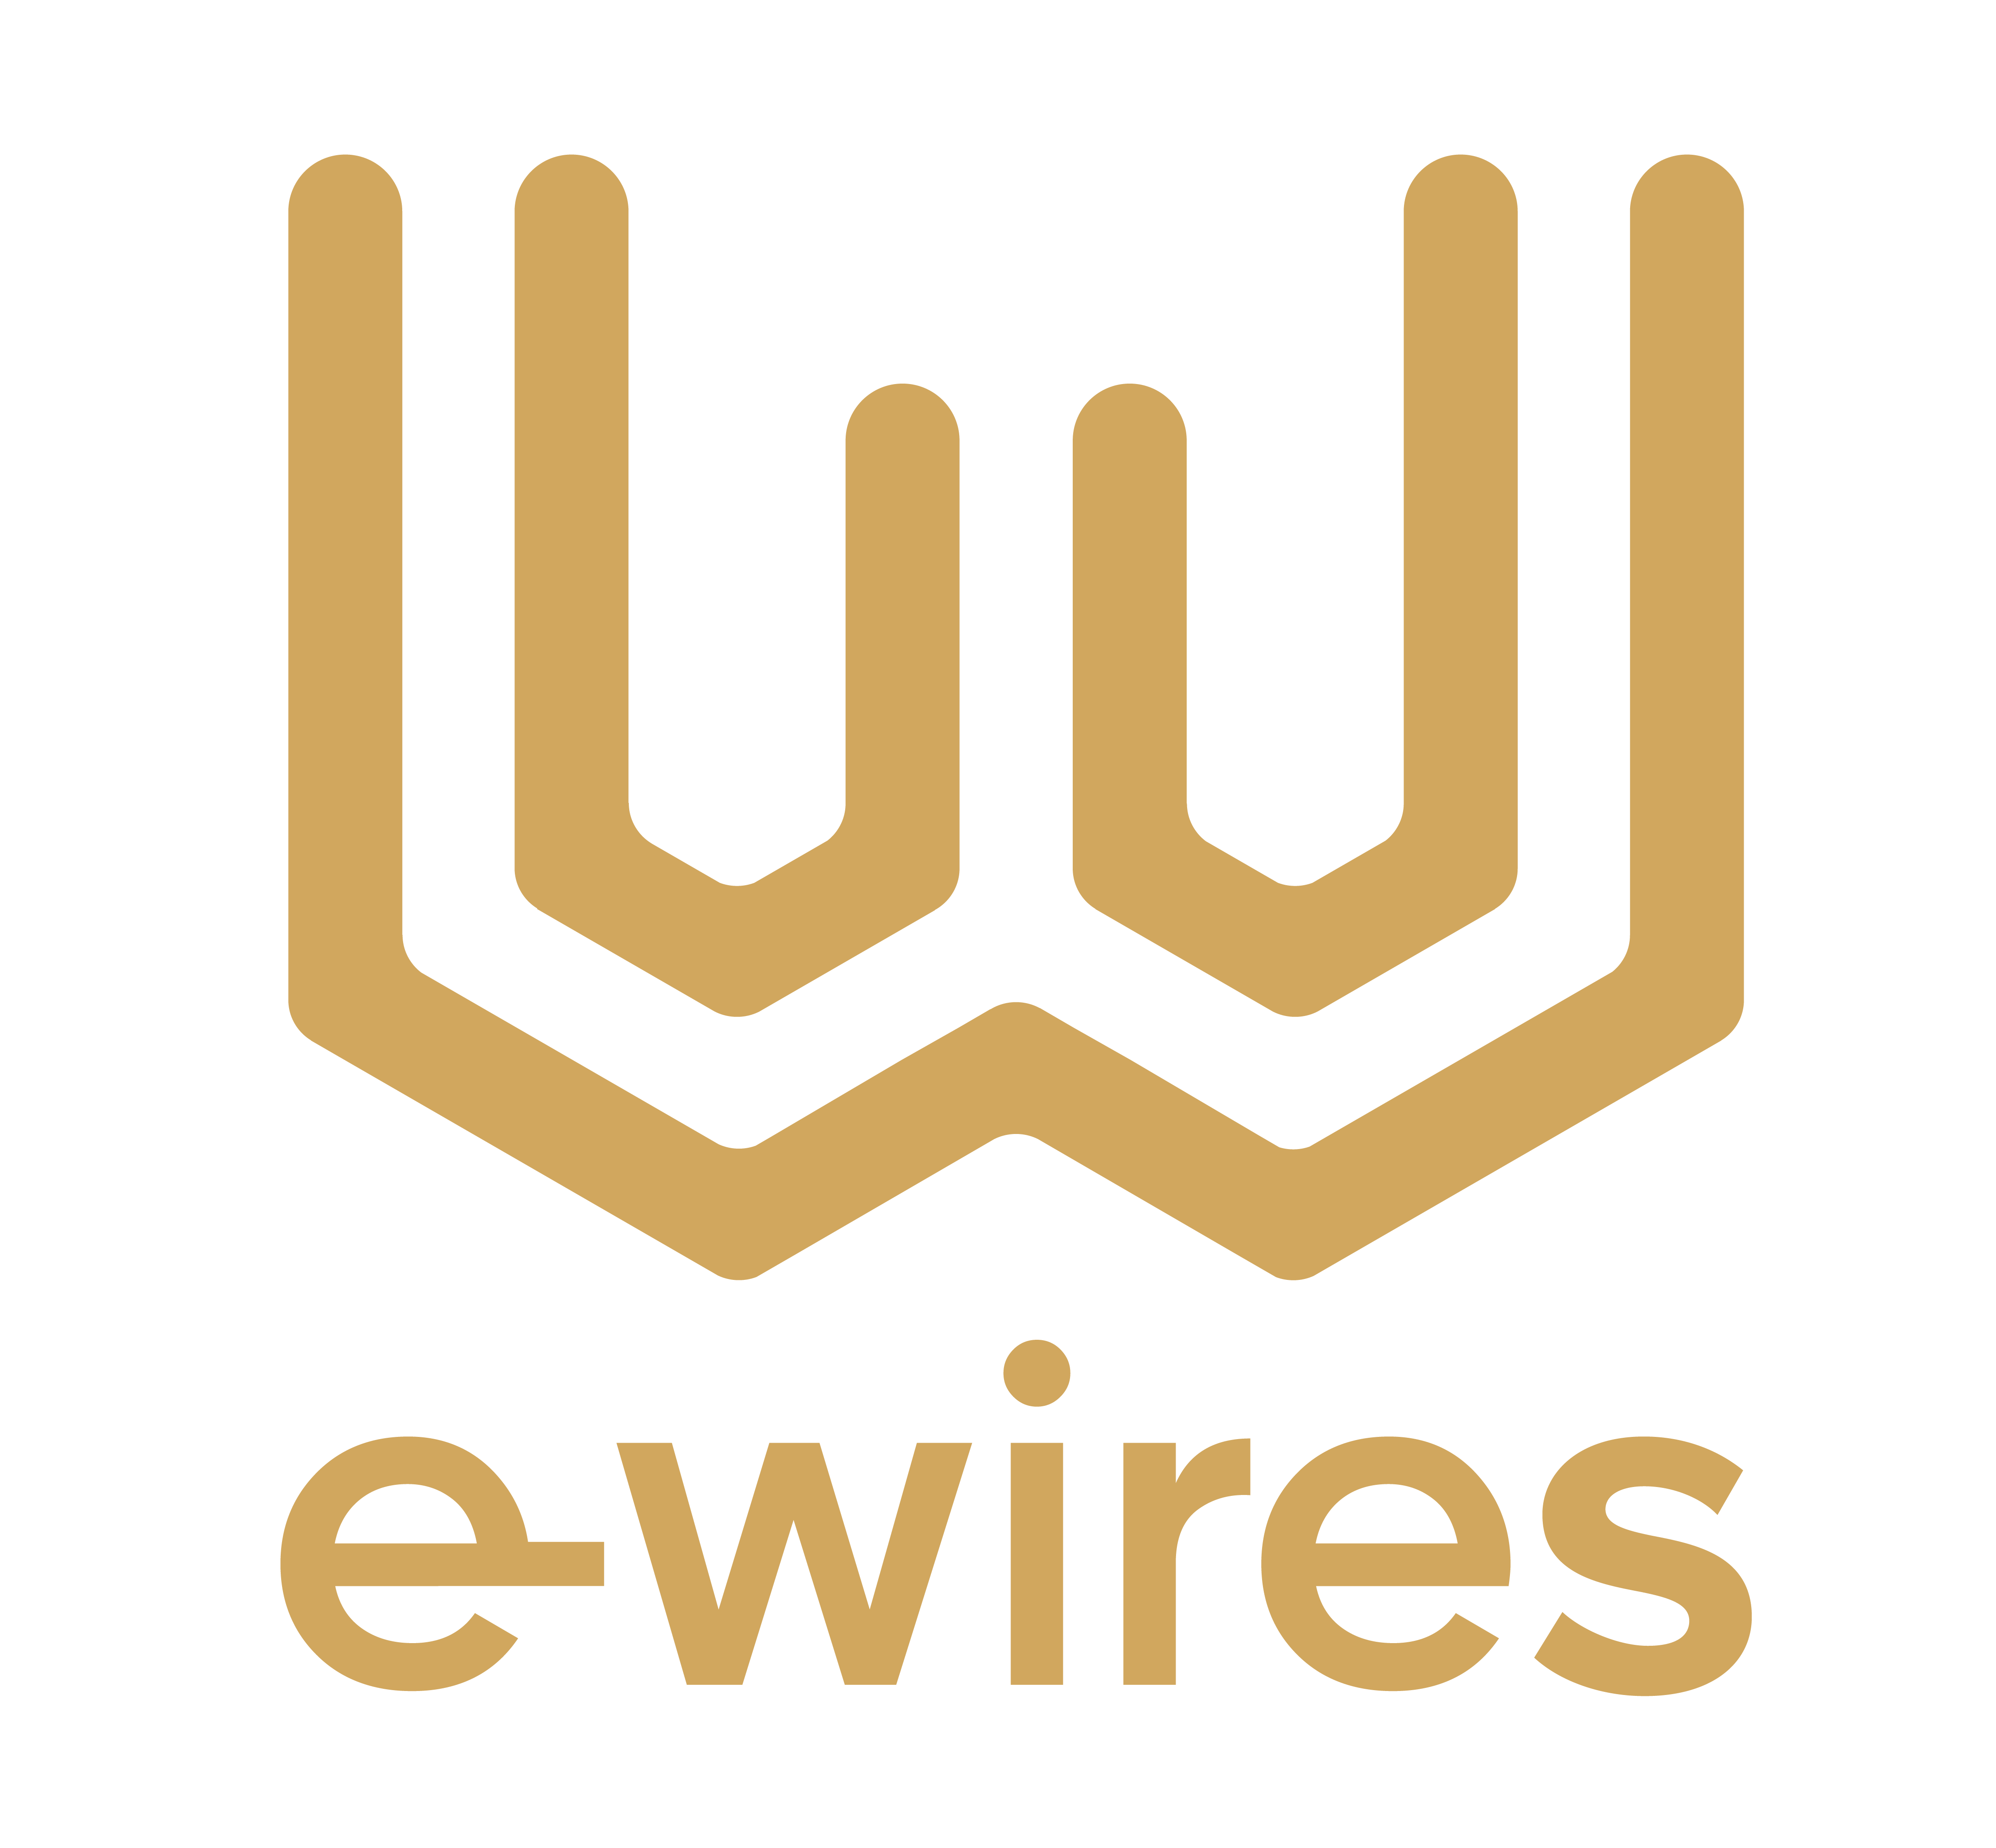 e-wires